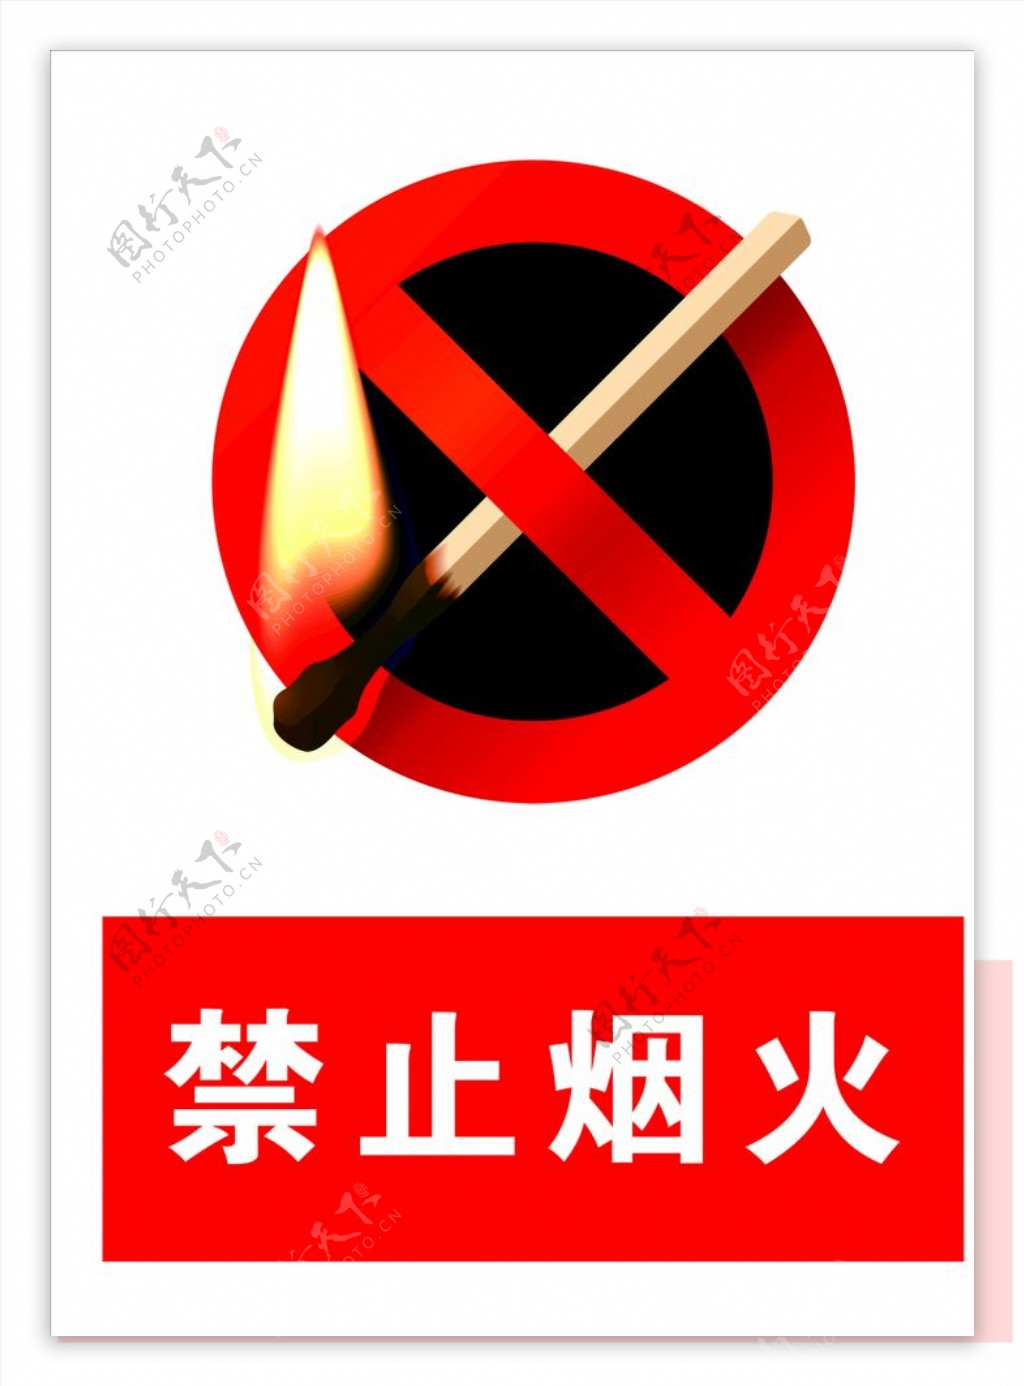 禁止烟火标识